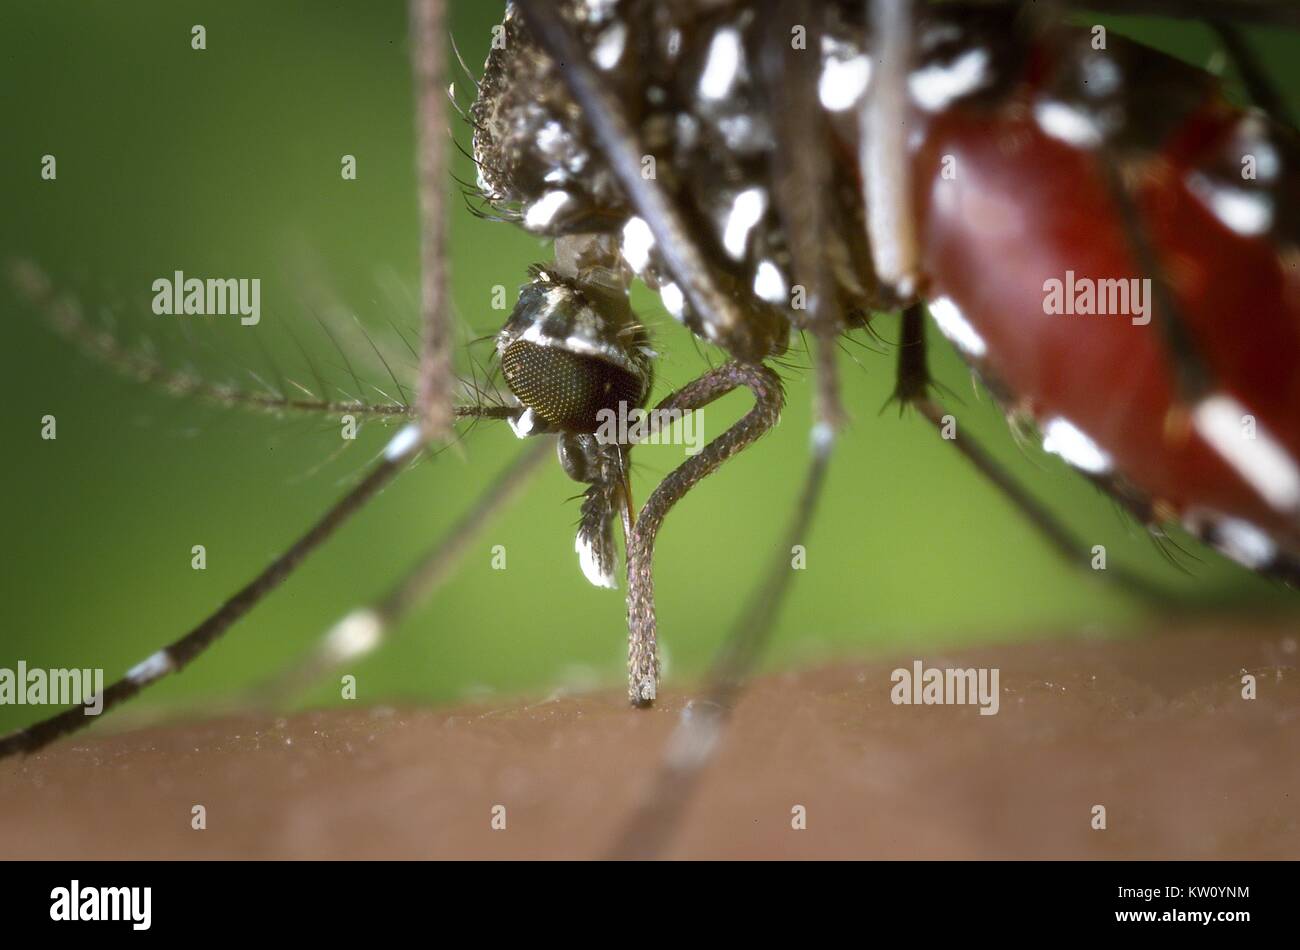 La proboscide di un Aedes albopictus mosquito avanzamento sul sangue umano. In condizioni sperimentali l Aedes albopictus zanzara, noto anche come la tigre asiatica zanzara, ha dimostrato di essere un vettore del virus del Nilo occidentale. Aedes è un genere della famiglia Culicine di zanzare. Immagine cortesia CDC/James Gathany, 2002. Foto Stock